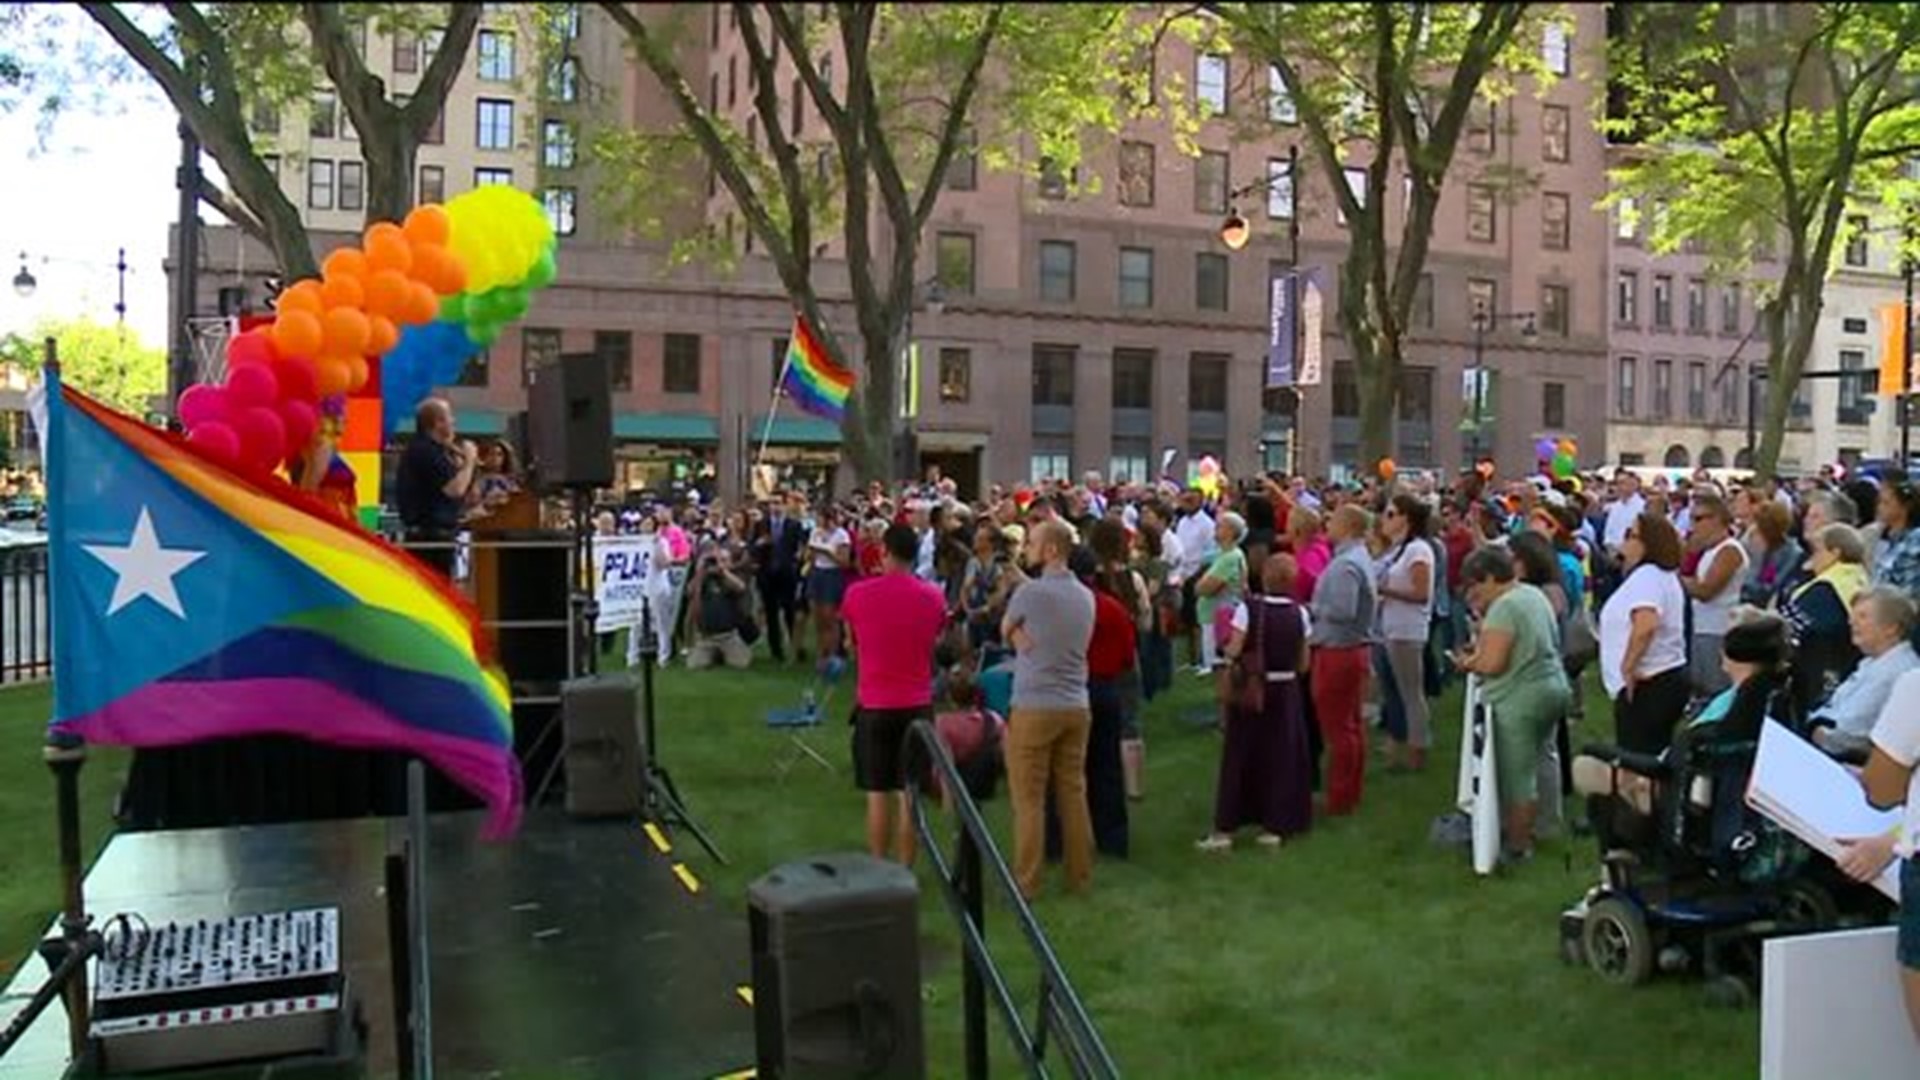 Celebrating gay pride in Hartford